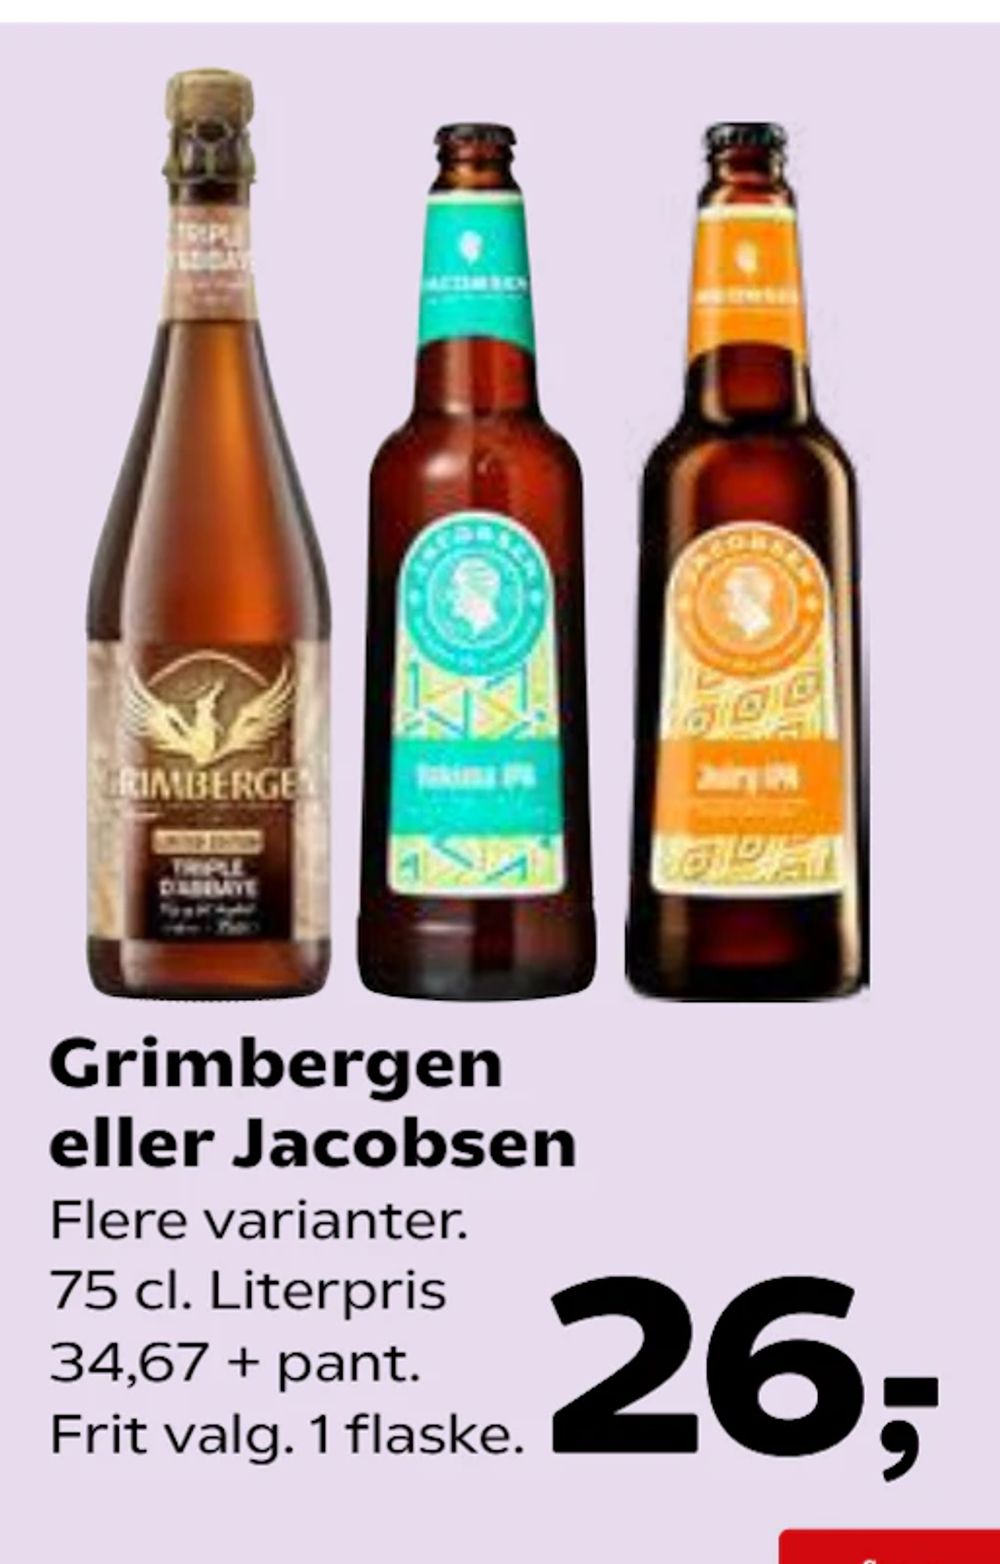 Tilbud på Grimbergen eller Jacobsen fra Kvickly til 26 kr.